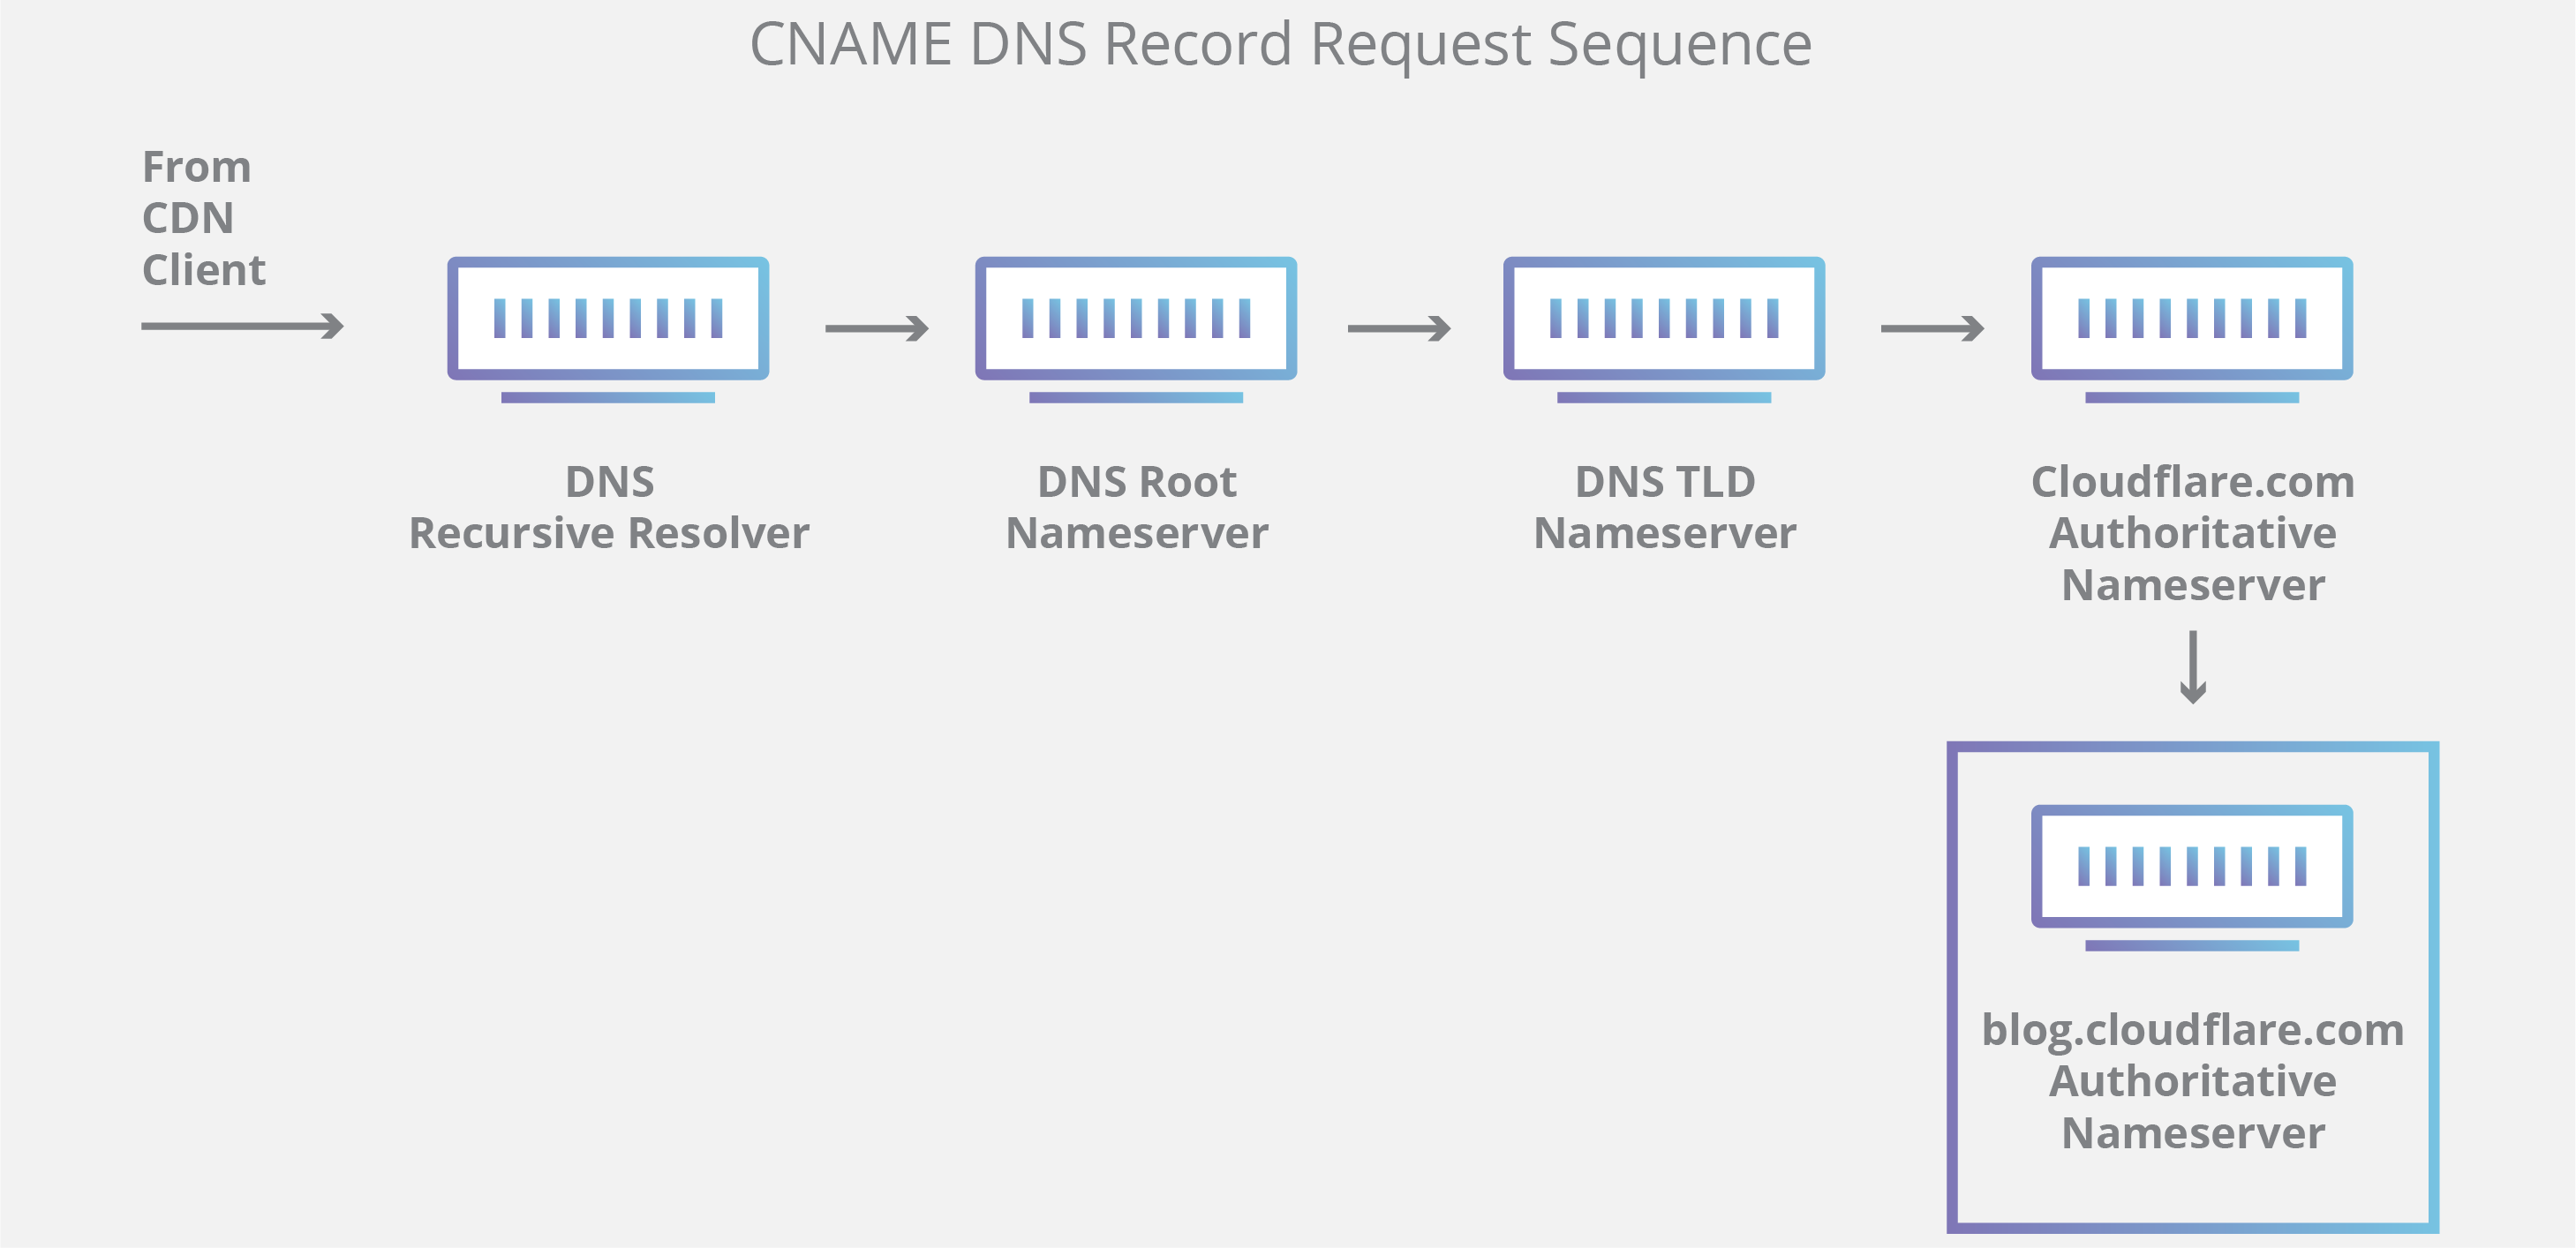 Diagramma query DNS